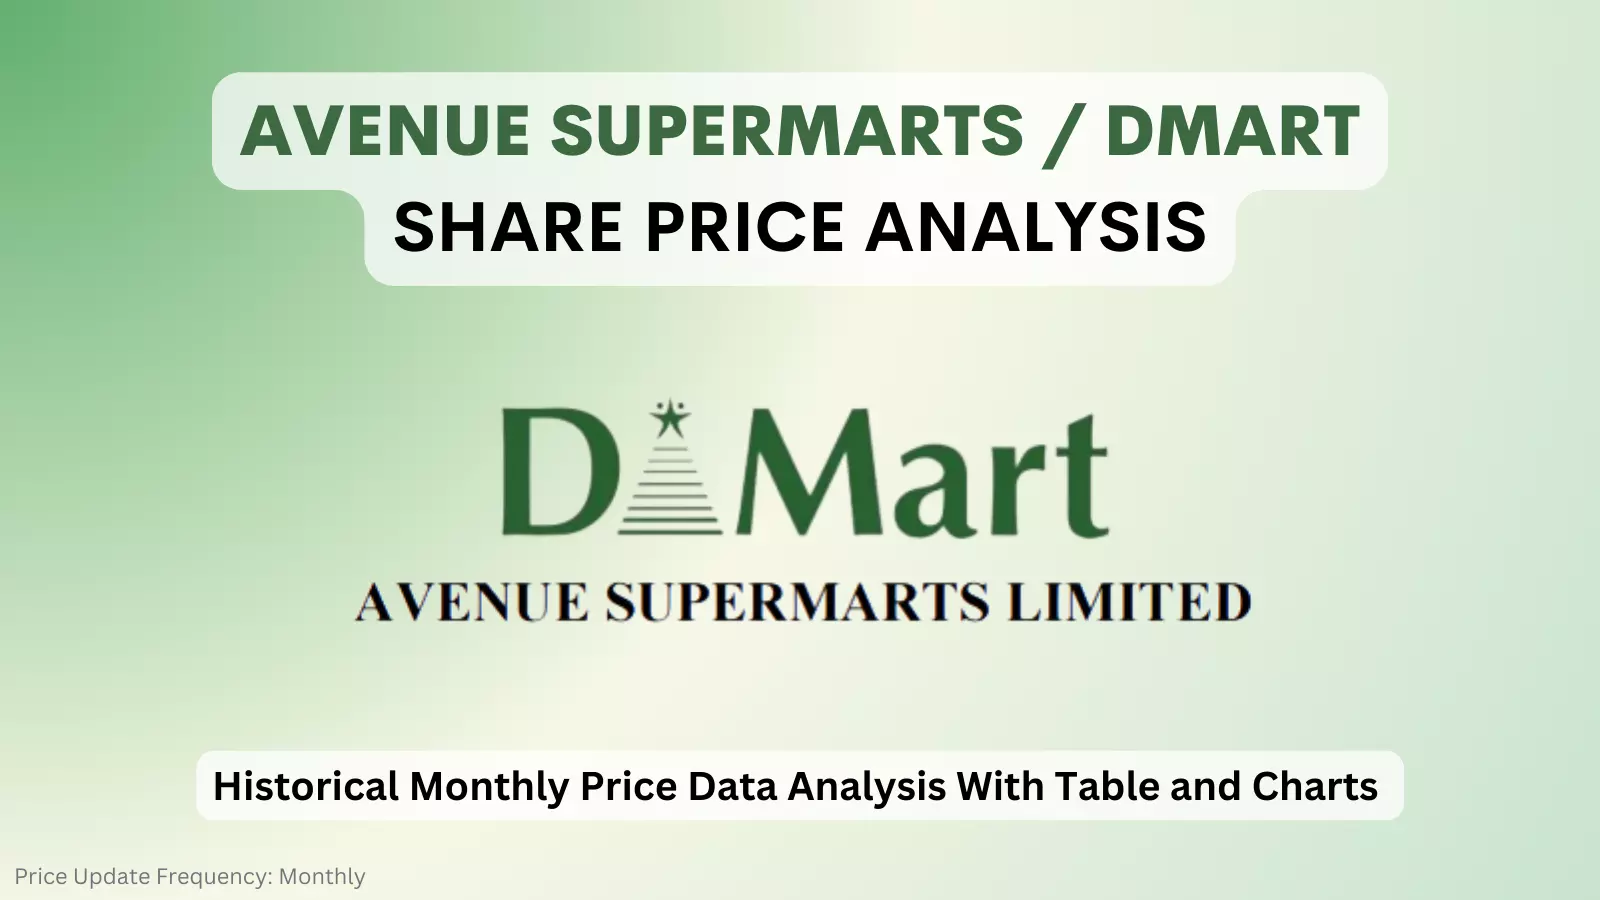 dmart share price analysis